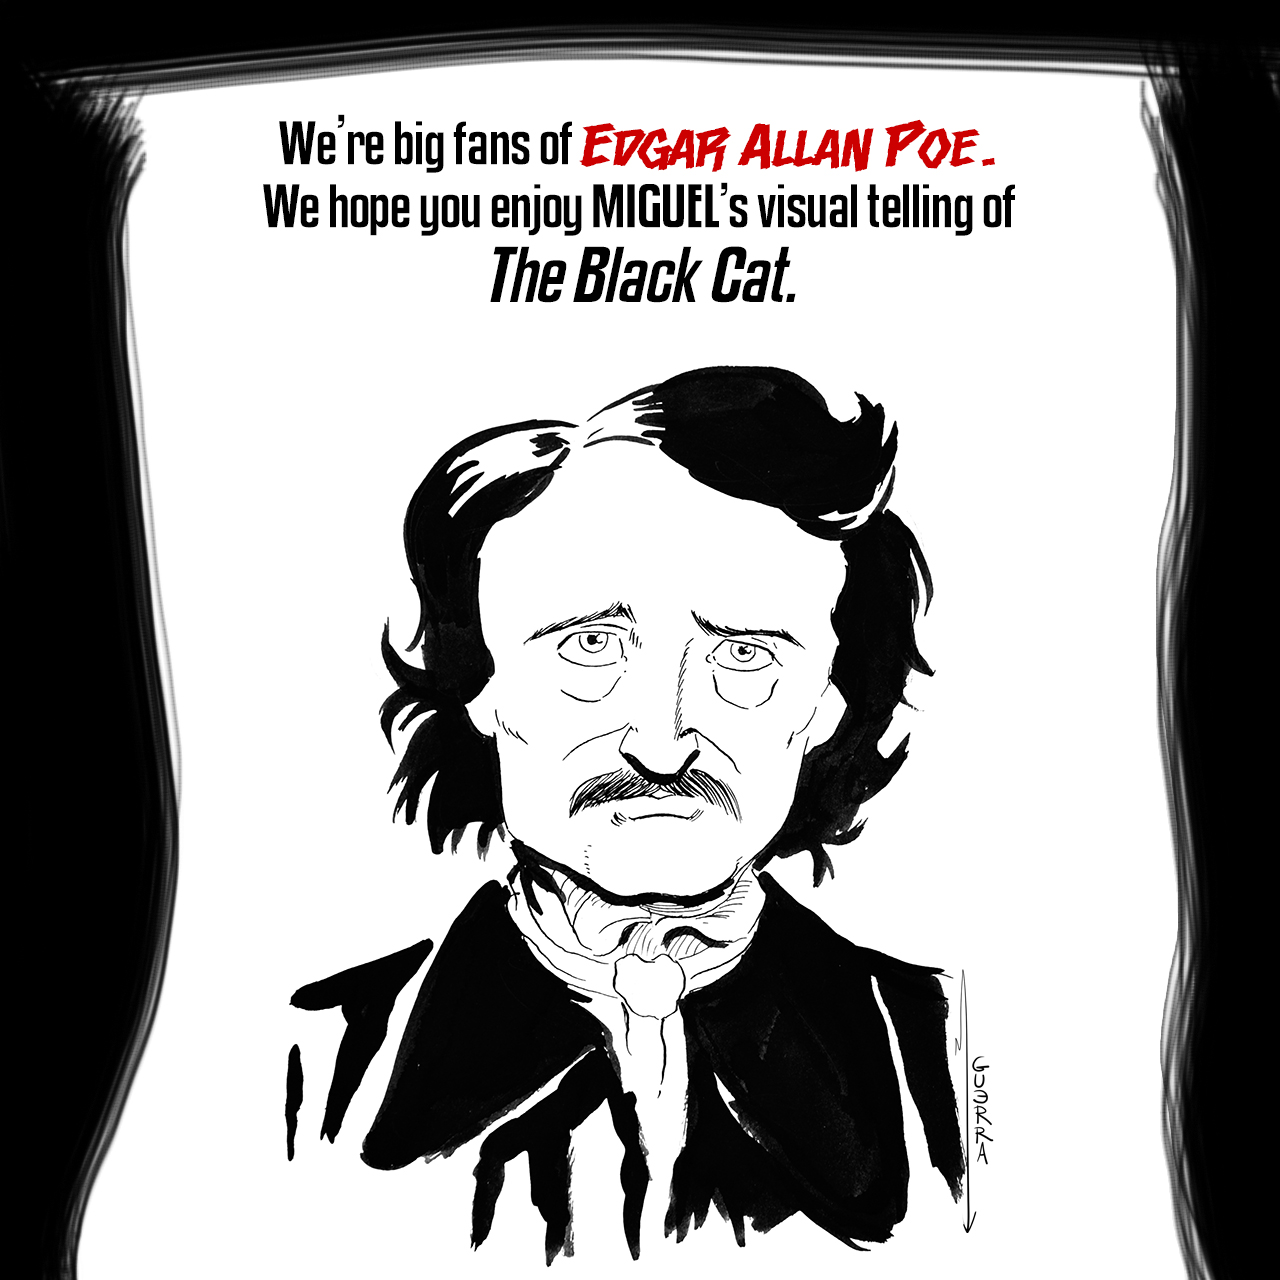 Ghost Metal: The Black Cat (s8 ep1) by Edgar Allan Poe